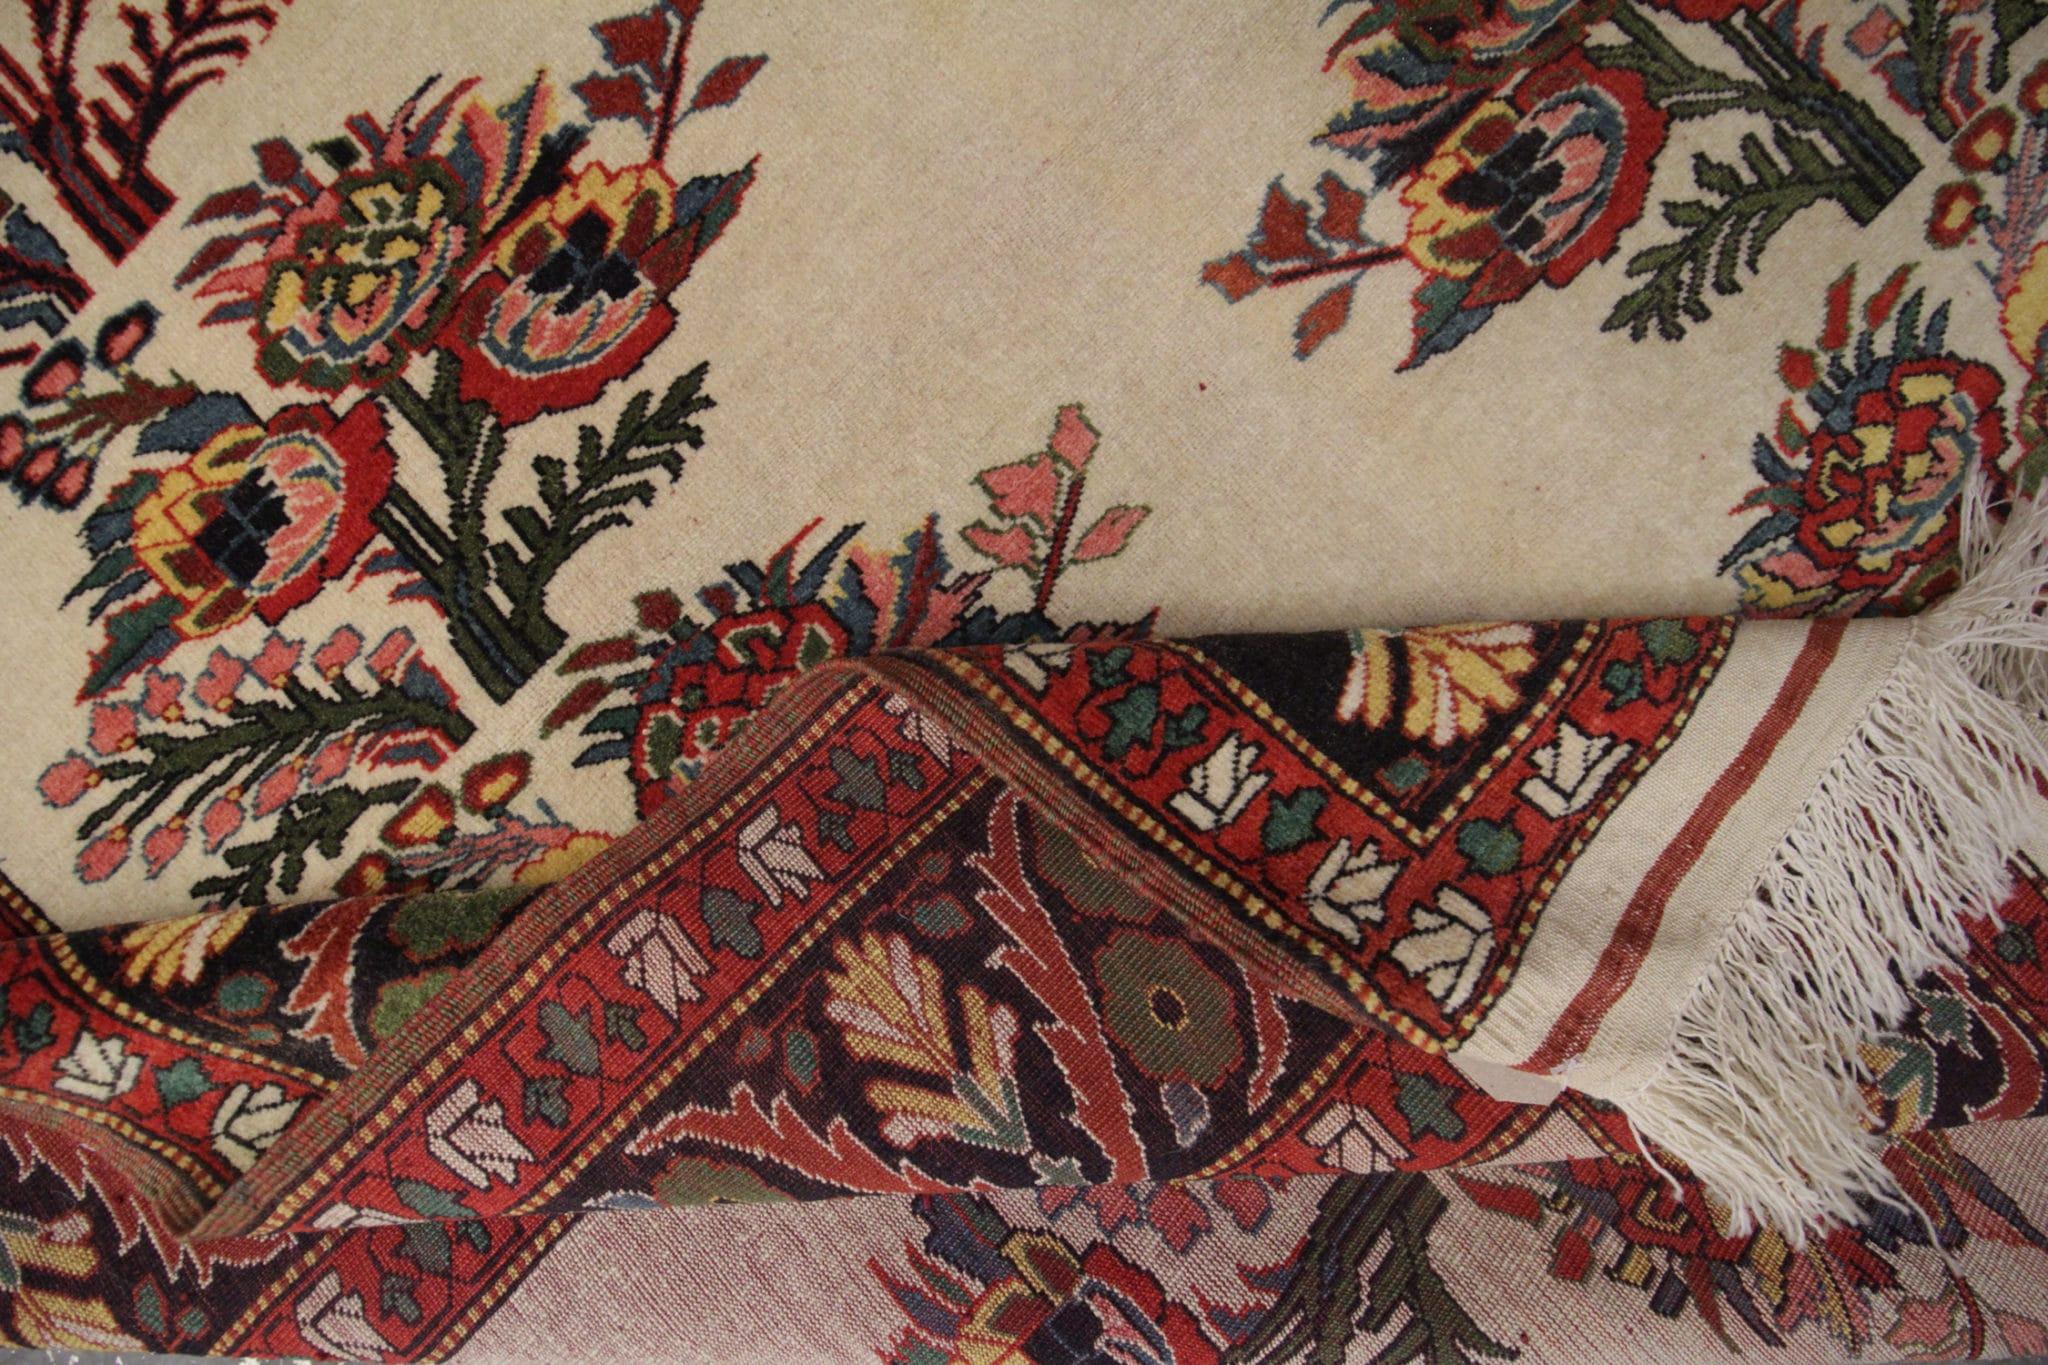 Dieser exquisite cremefarbene handgefertigte Vintage-Teppich ist ein wahres Zeugnis zeitloser Eleganz und Handwerkskunst. Dieses Meisterwerk, bei dem jeder einzelne Faden in aufwändiger Handarbeit geknüpft wird, besticht durch sein traditionelles,